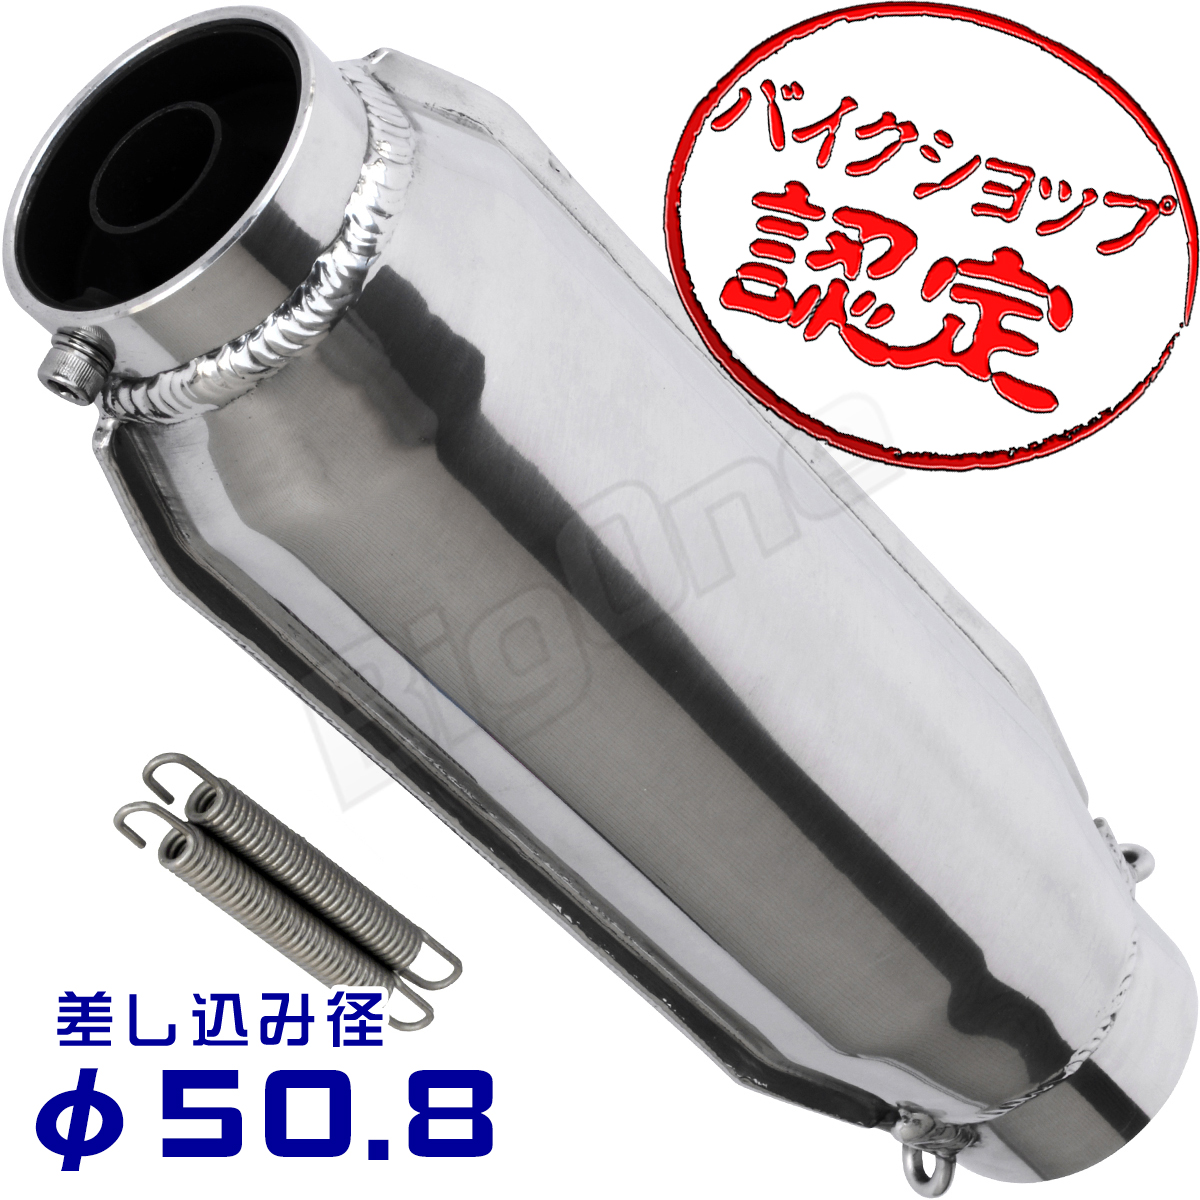 【楽天市場】SR400 SR500 メガホン タイプ スリップオン マフラー 